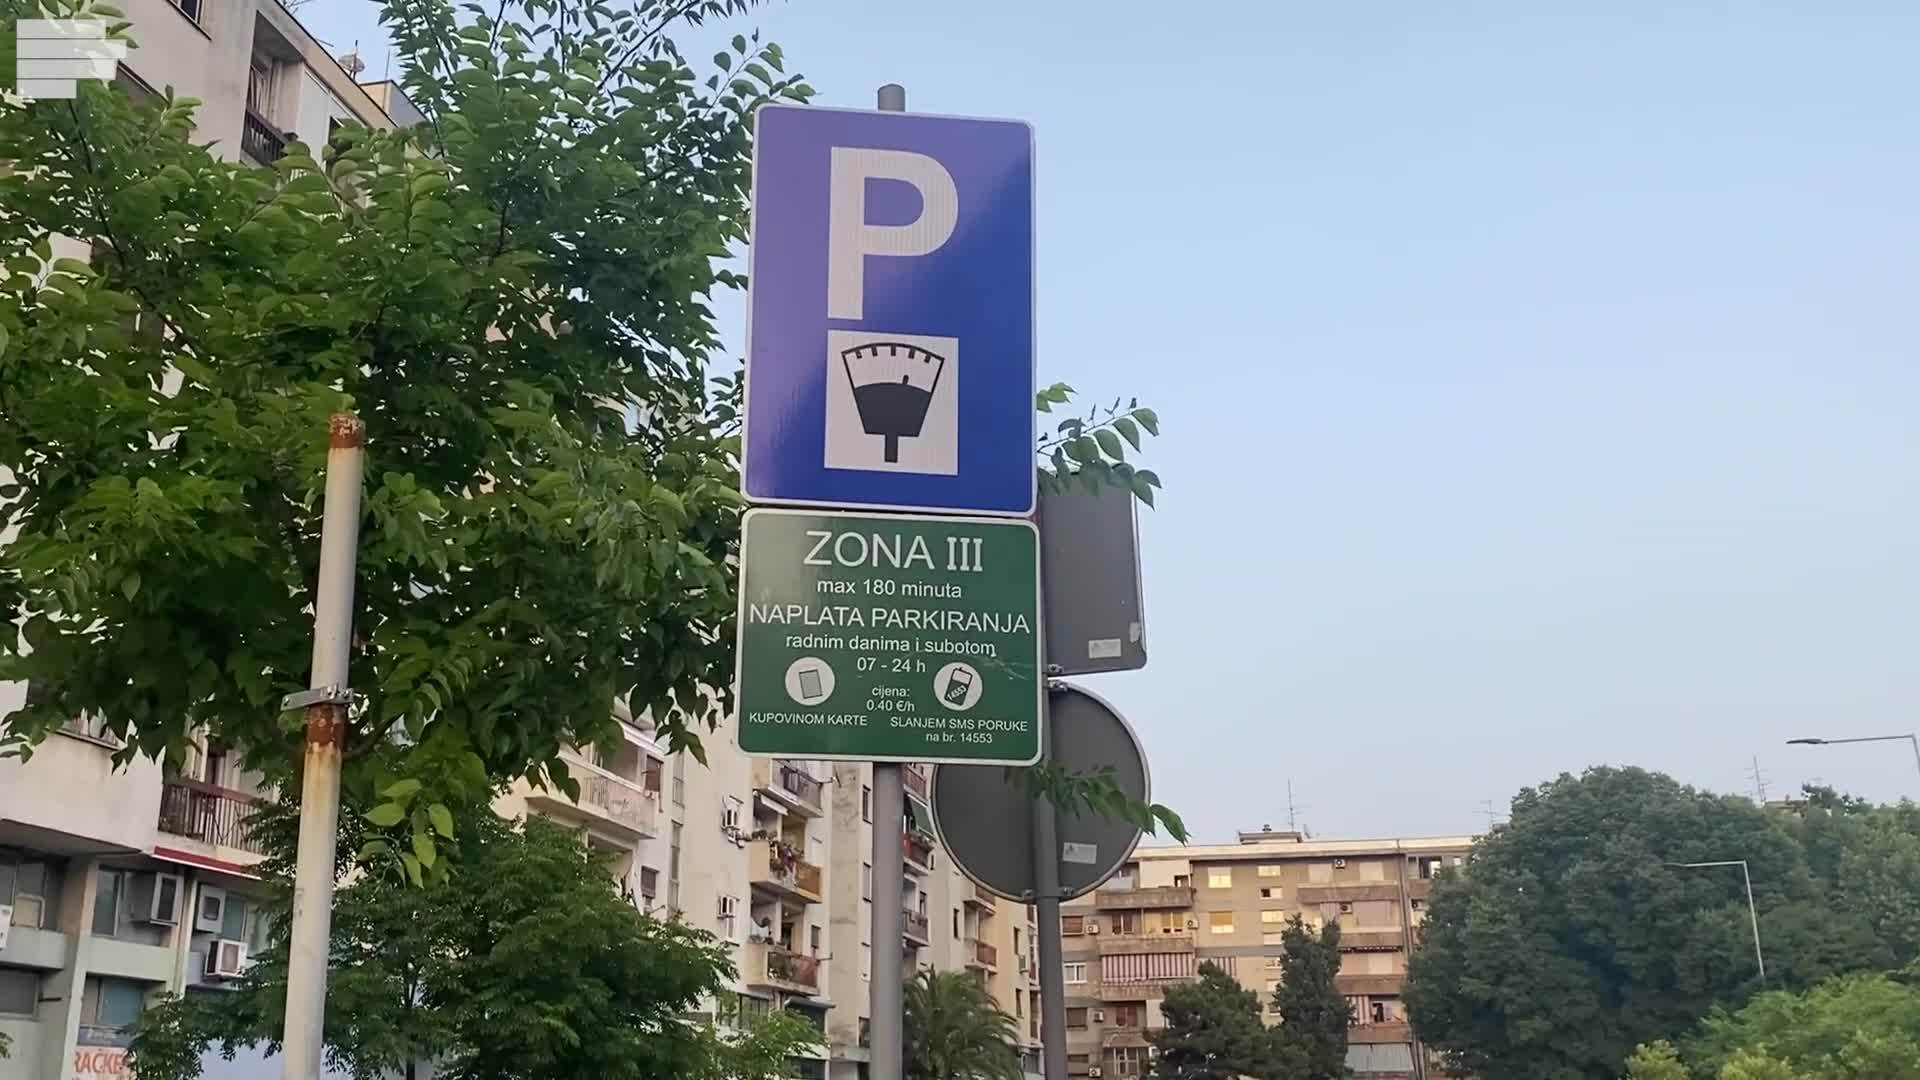  Počinje naplata parkiranja za još 526 mjesta u Podgorici  